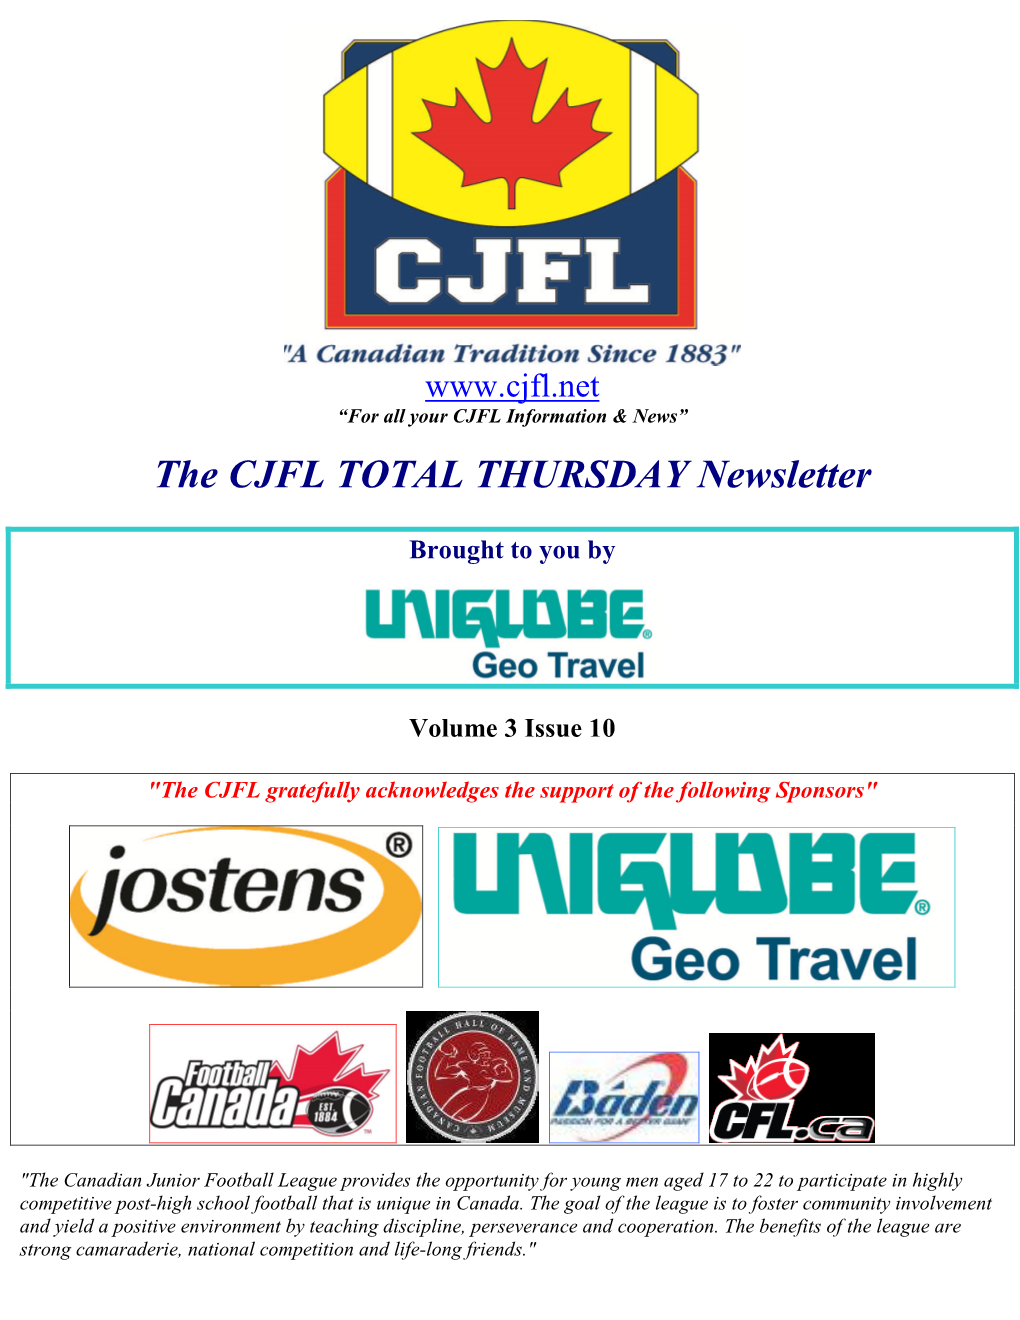 The CJFL TOTAL THURSDAY Newsletter